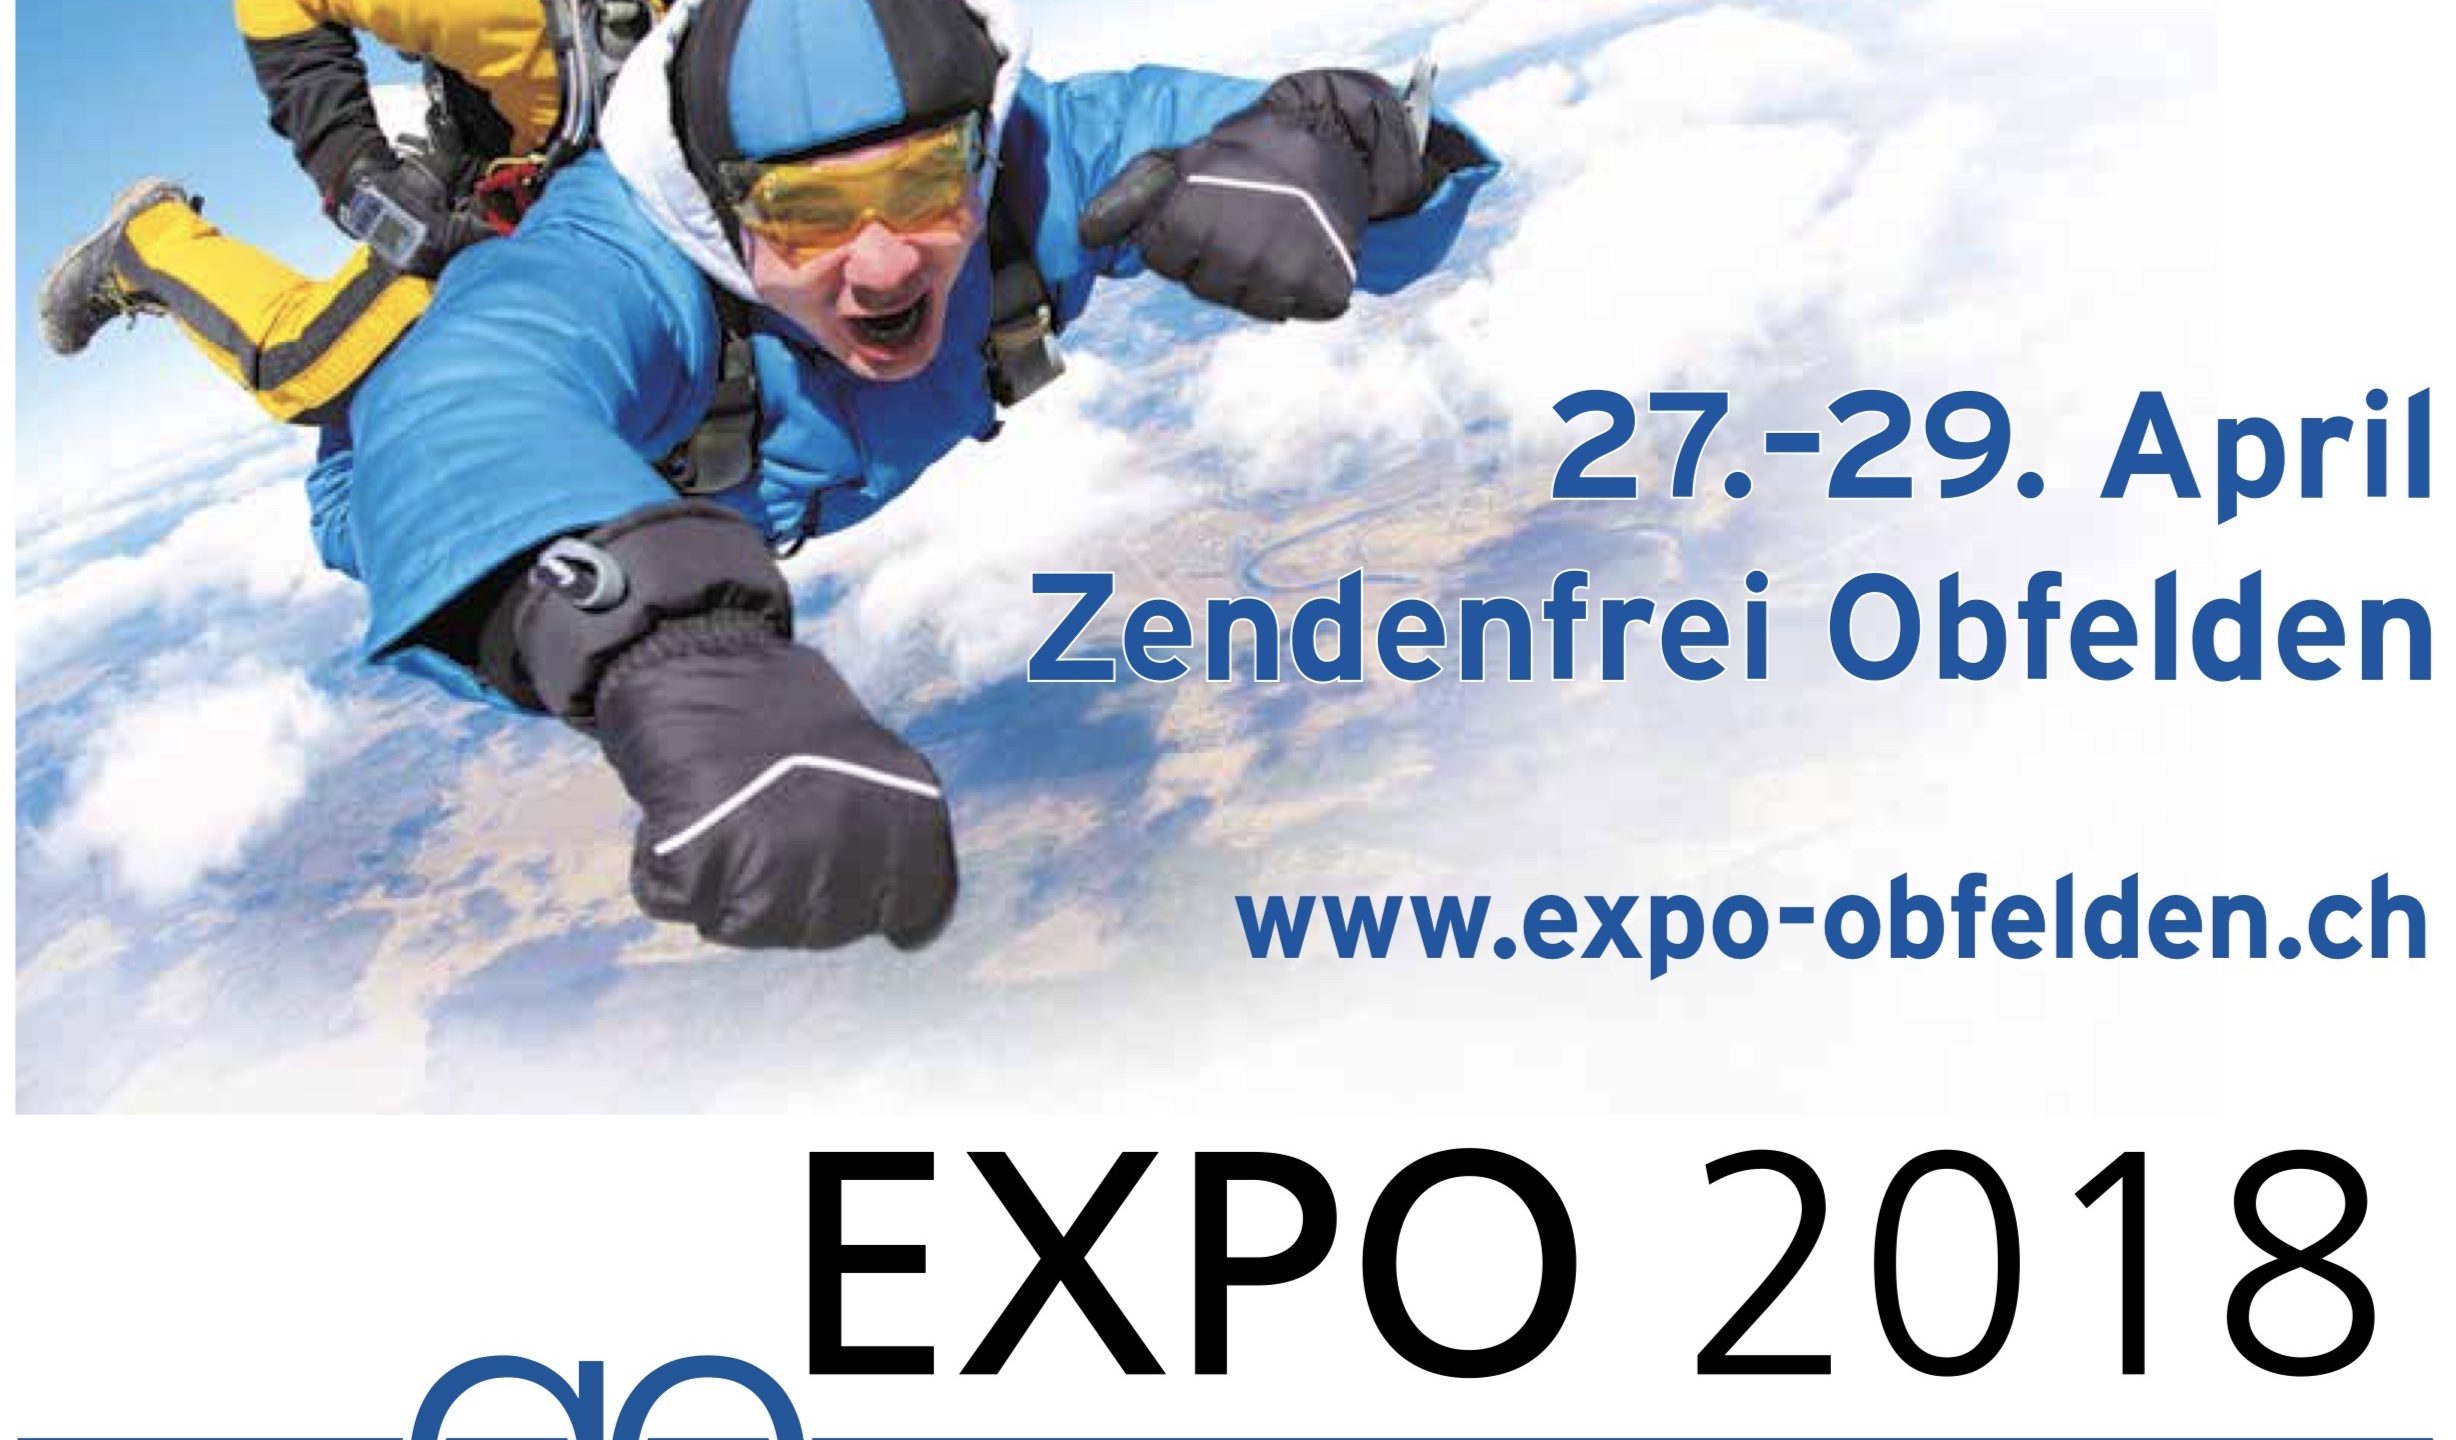 Das Turnfest an der Gewerbe-Expo in Obfelden